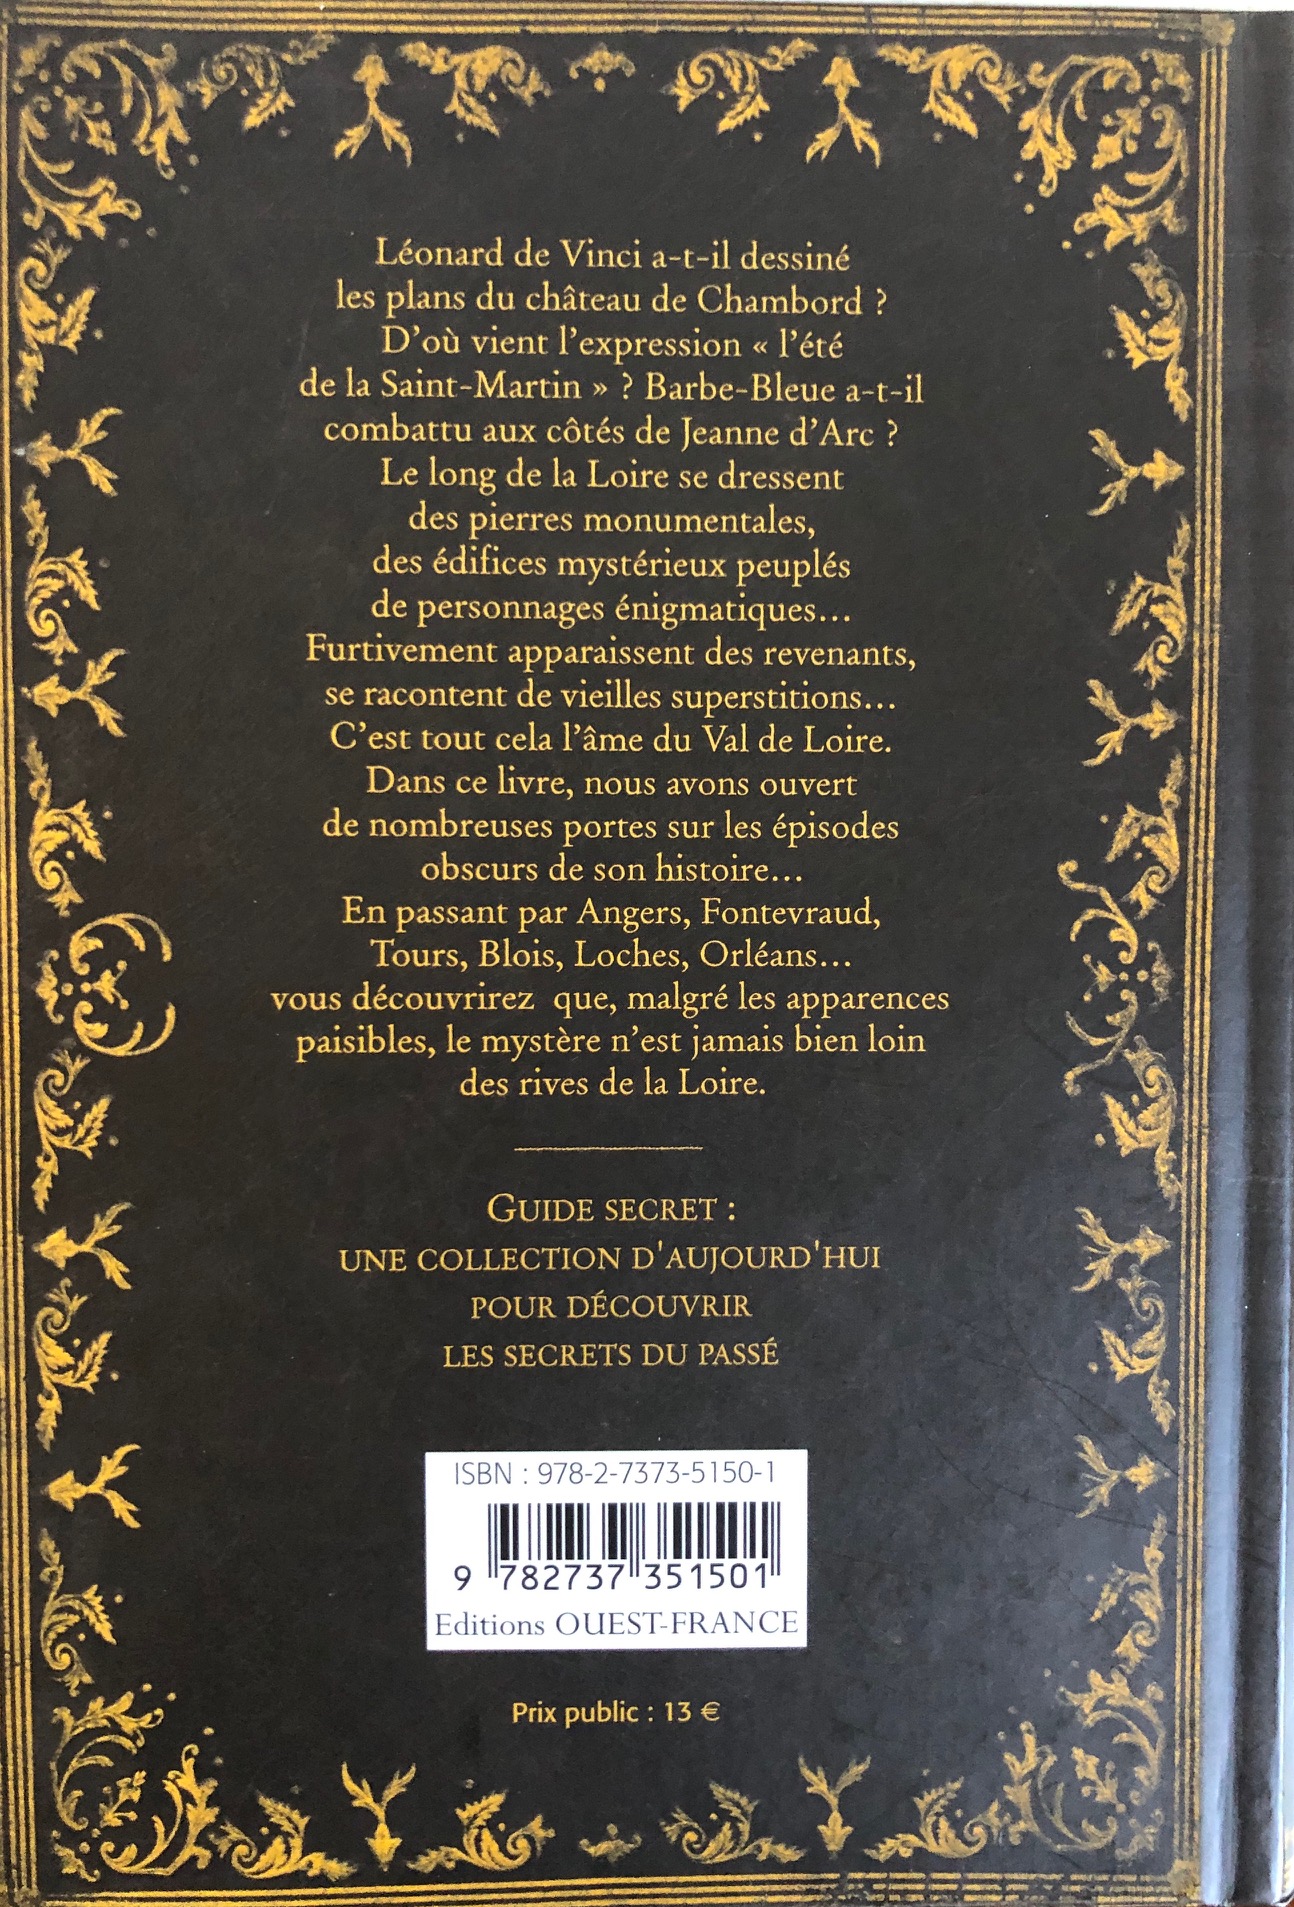 NEDELEC Guide secret Val de Loire 4ème couv IMG_1450